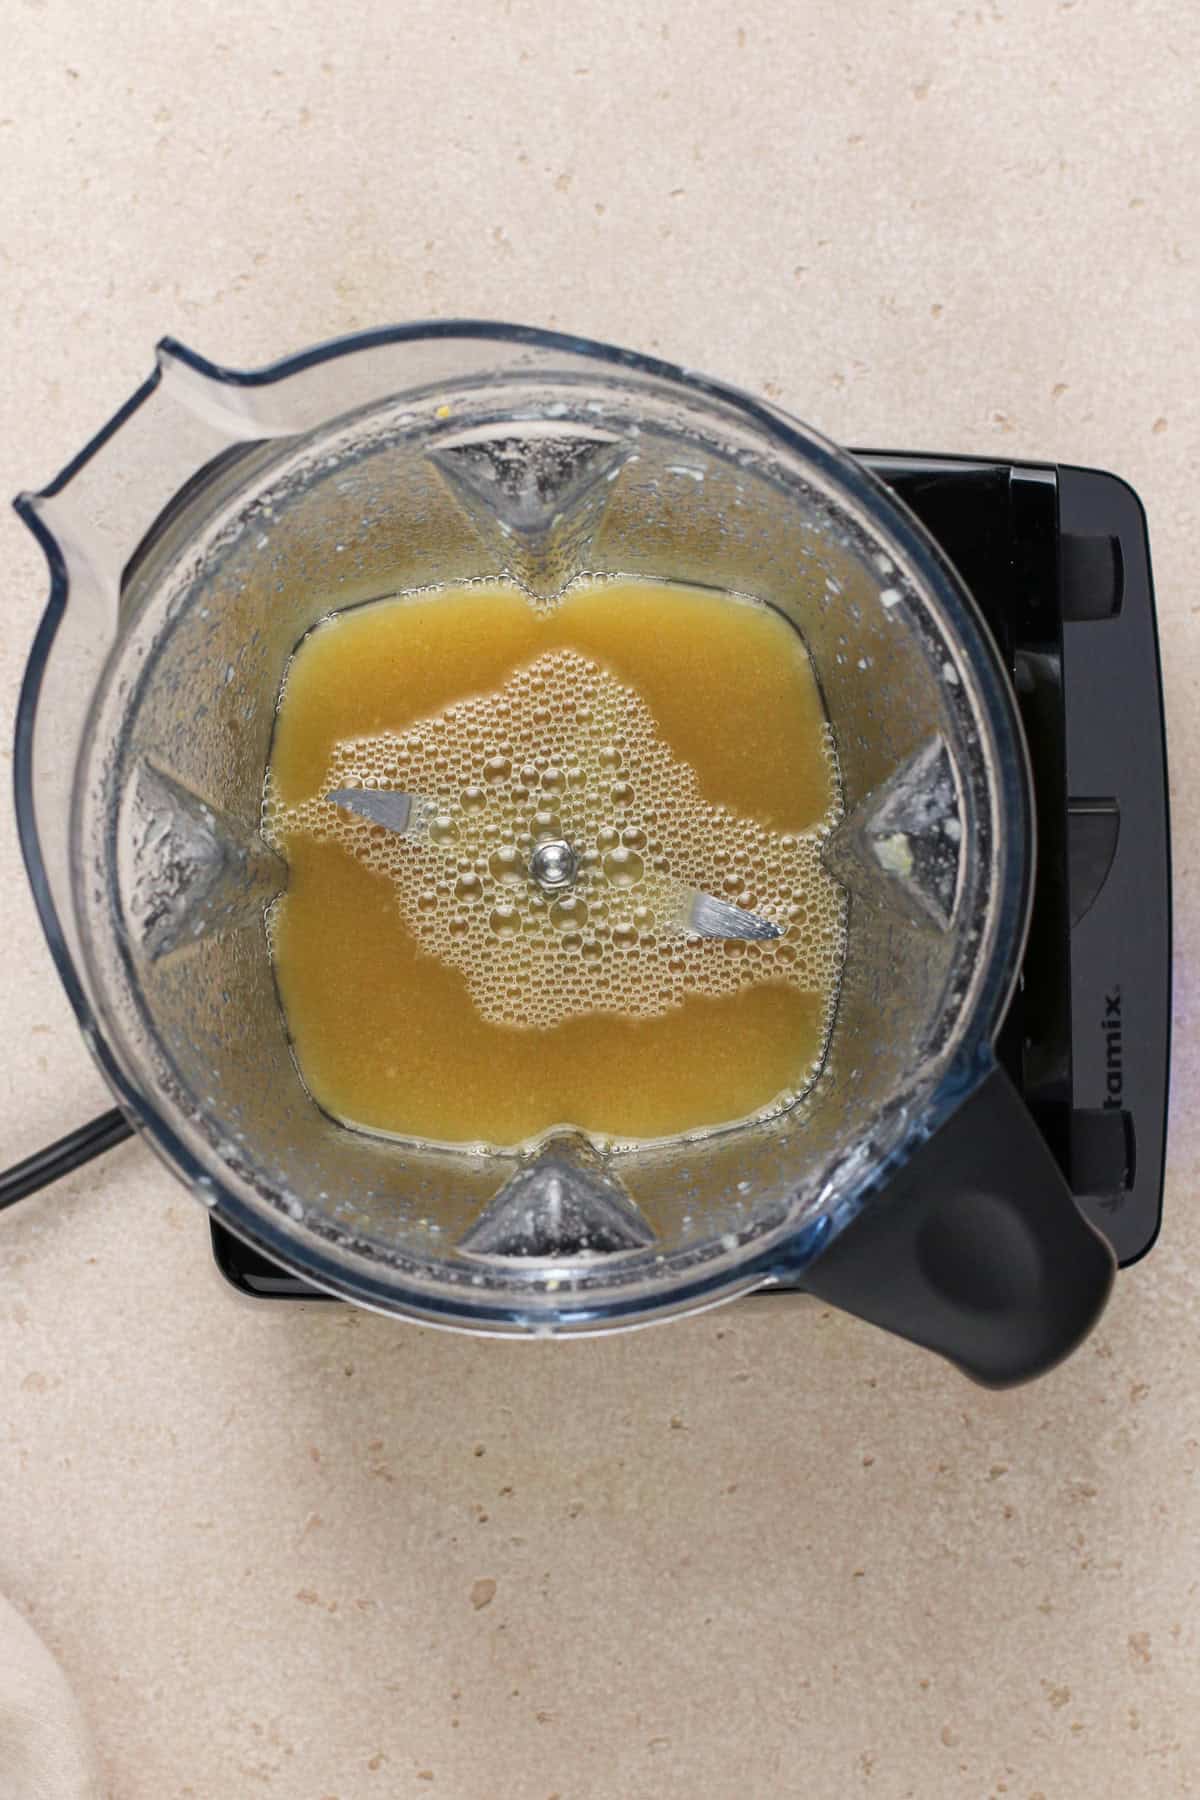 Sugar, vinegar, and mustard blended together in the bowl of a blender.